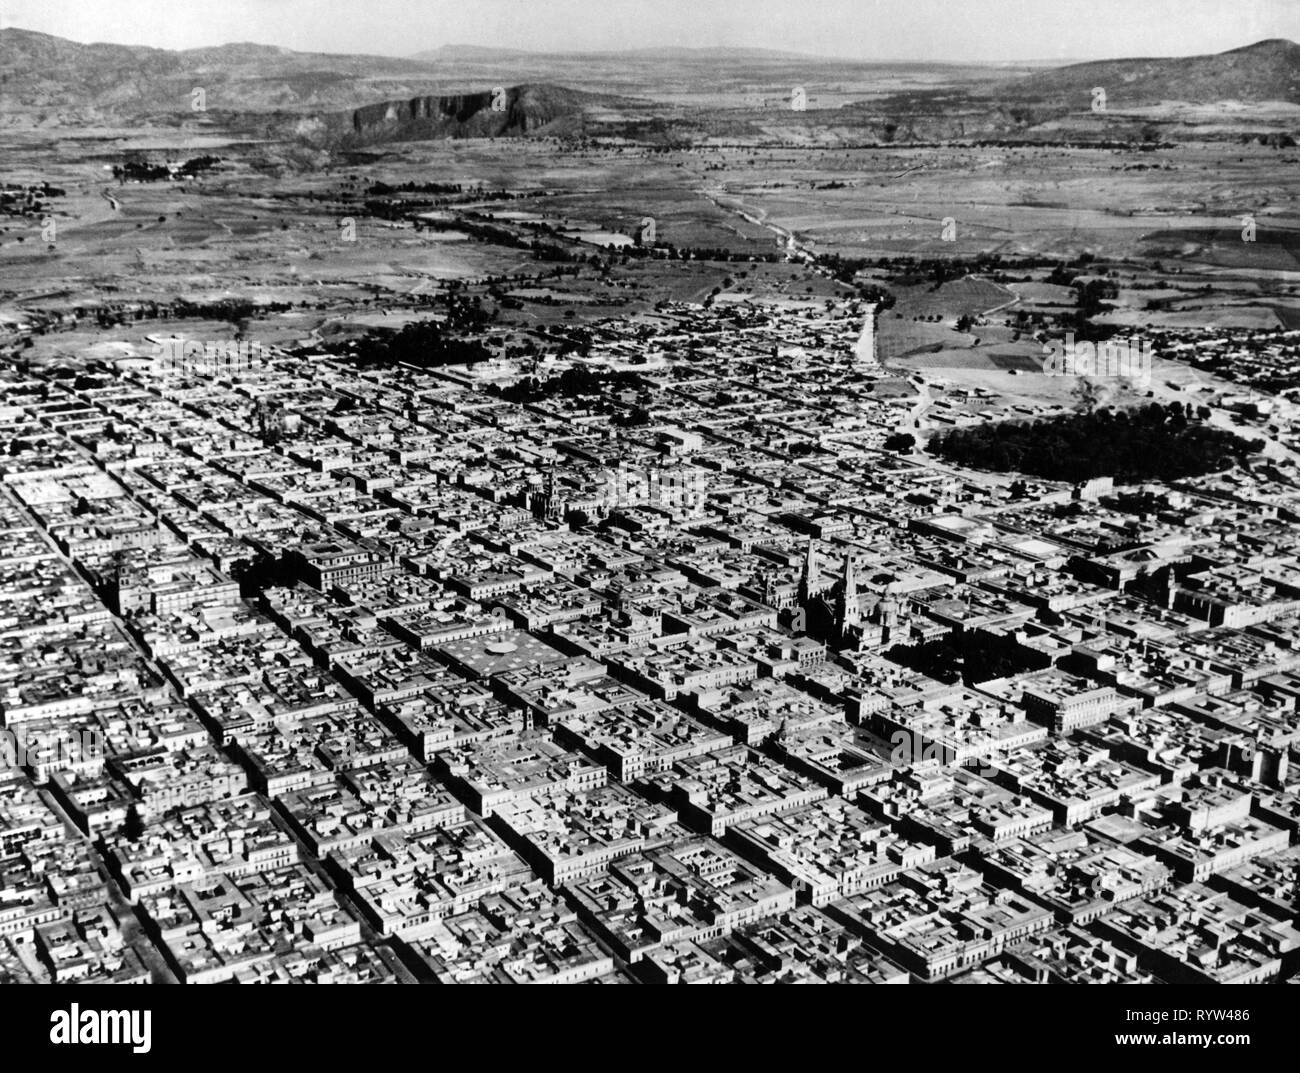 Geografía / viajes, México, Guadalajara, Ciudad vistas / paisajes urbanos, vista aérea, 1950-Clearance-Info Additional-Rights-Not-Available Foto de stock